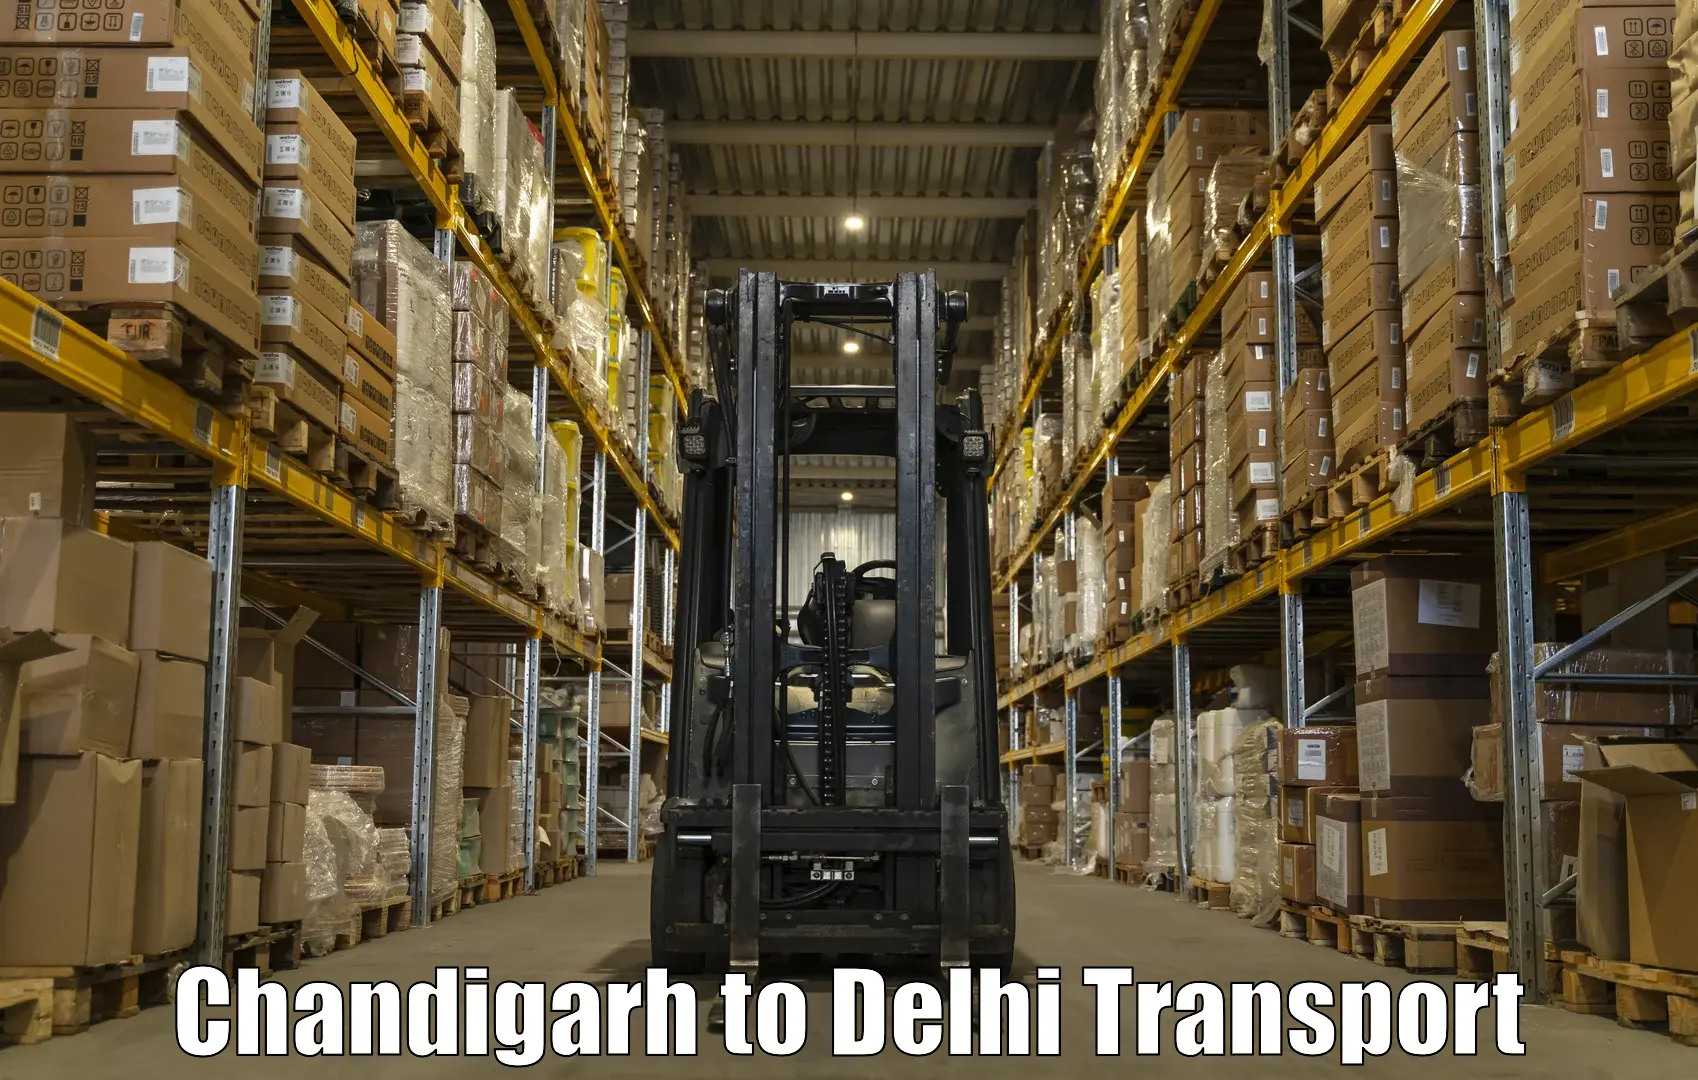 Shipping partner Chandigarh to University of Delhi